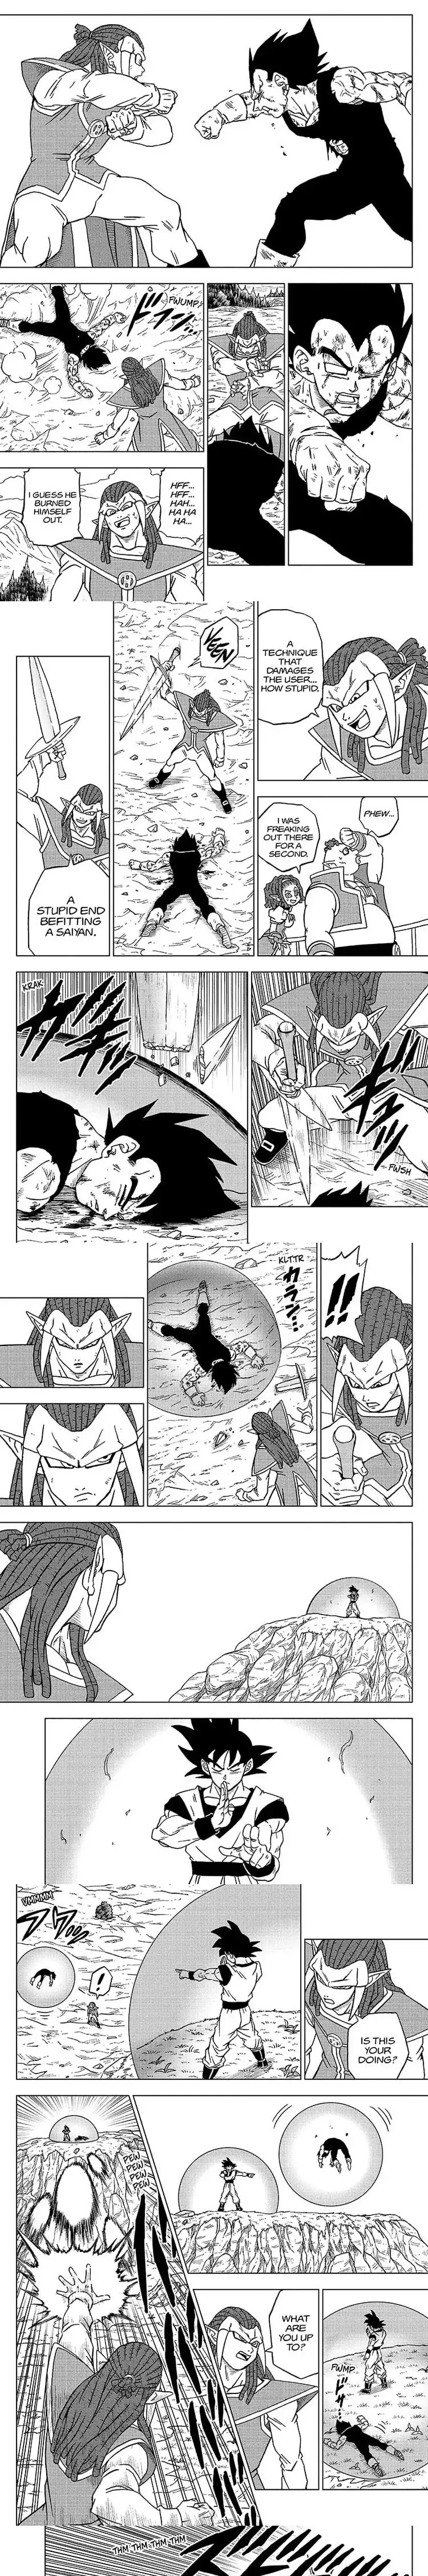 Dragon Ball Super - 85 page 5-746074f6